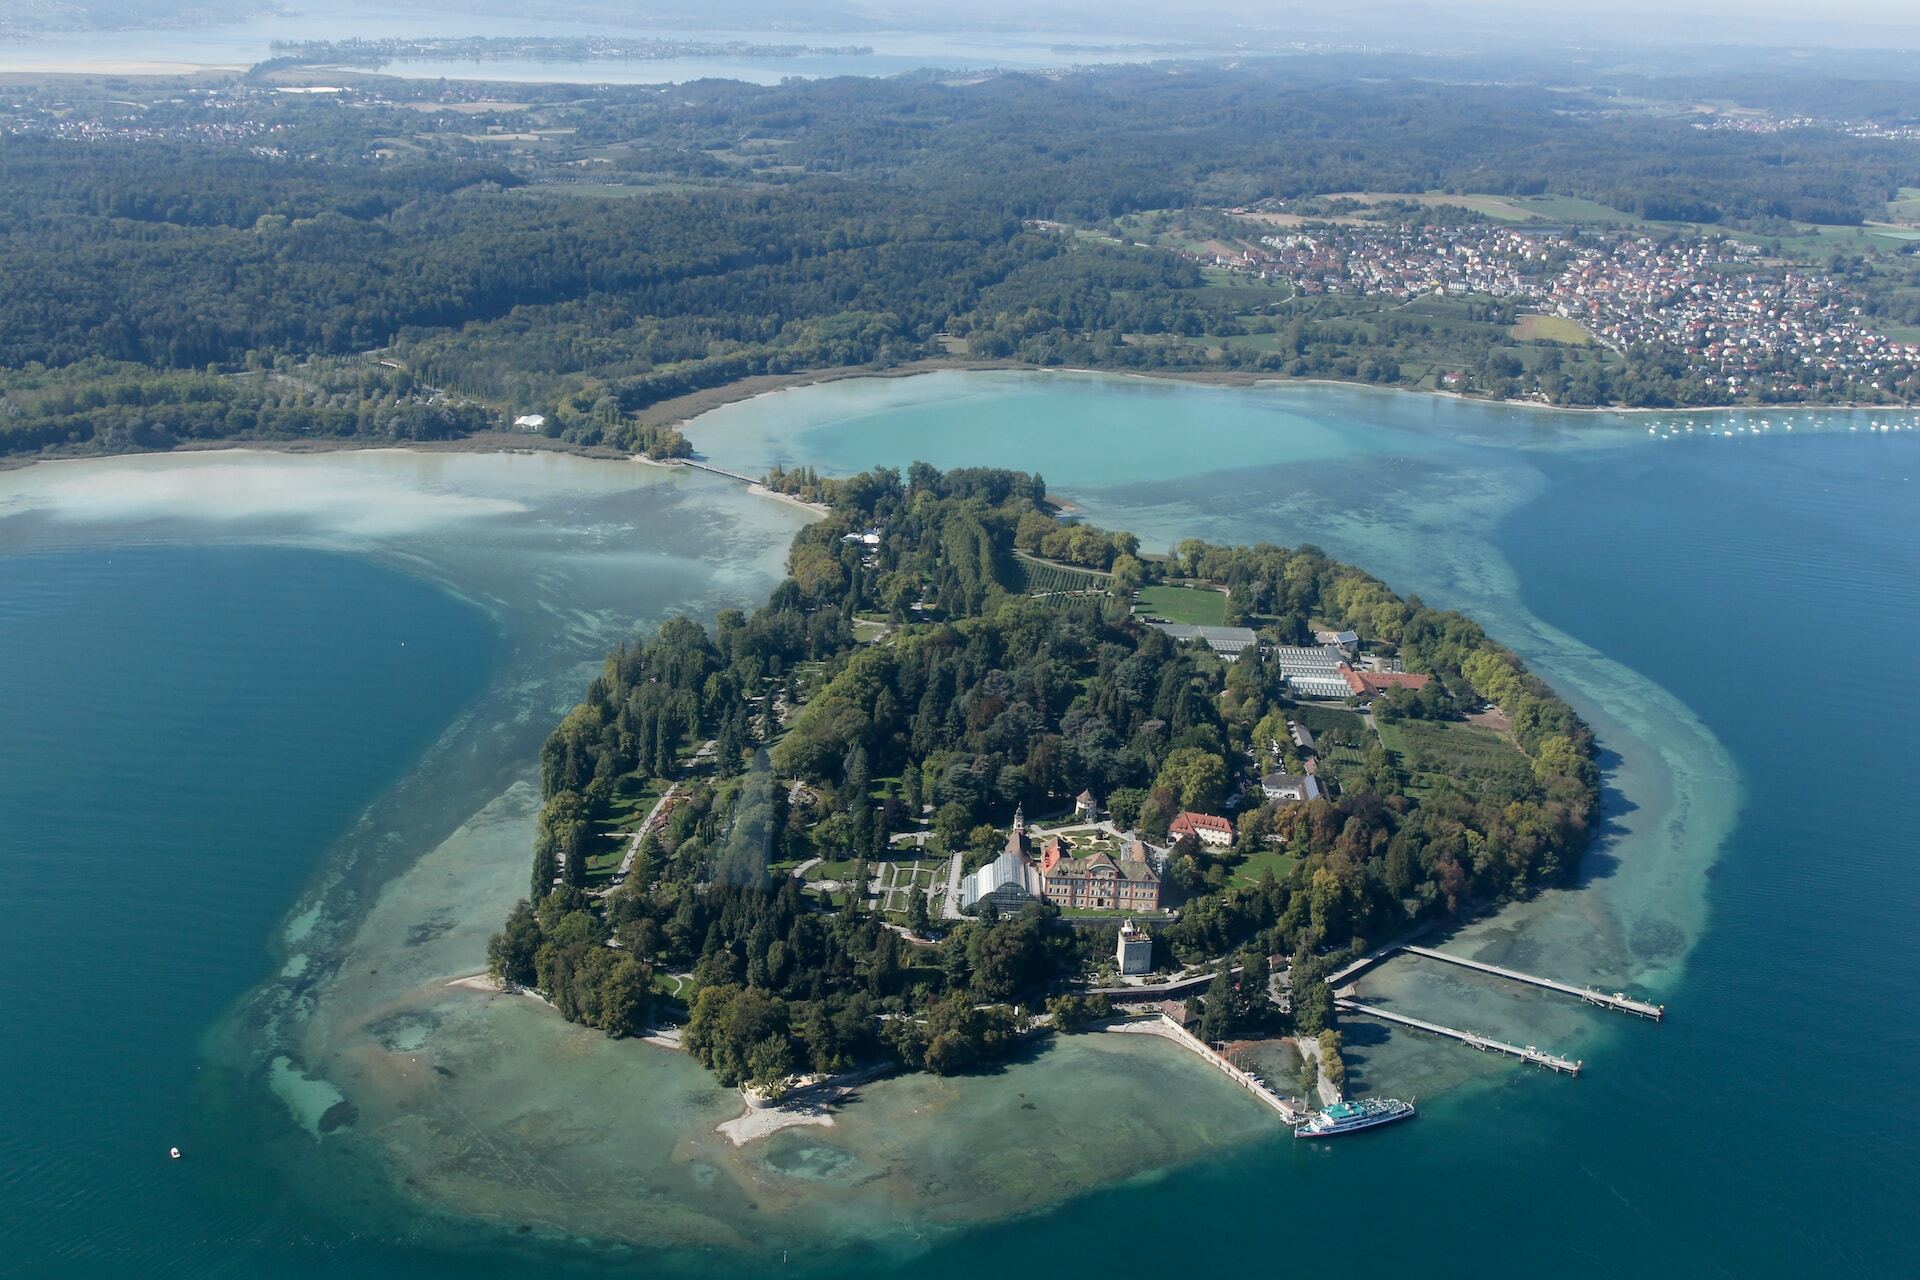 Insel Mainau Die Insel Mainau ist die drittgrößte Insel im Bodensee. Sie gehört zum Stadtgebiet Konstanz und ist seit 1974 im Besitz von Graf Lennart Bernadotte. Auf der Insel wachsen (aufgrund des Bodenseeklimas) Palmen und mediterrane Pflanzen, daher wird sie auch Blumeninsel genannt. Herzstück der Insel ist das Schloss Mainau und das ab 1856 parkähnlich angelegte Arboretum mit über 500 Laub- und Nadelgehölzen.